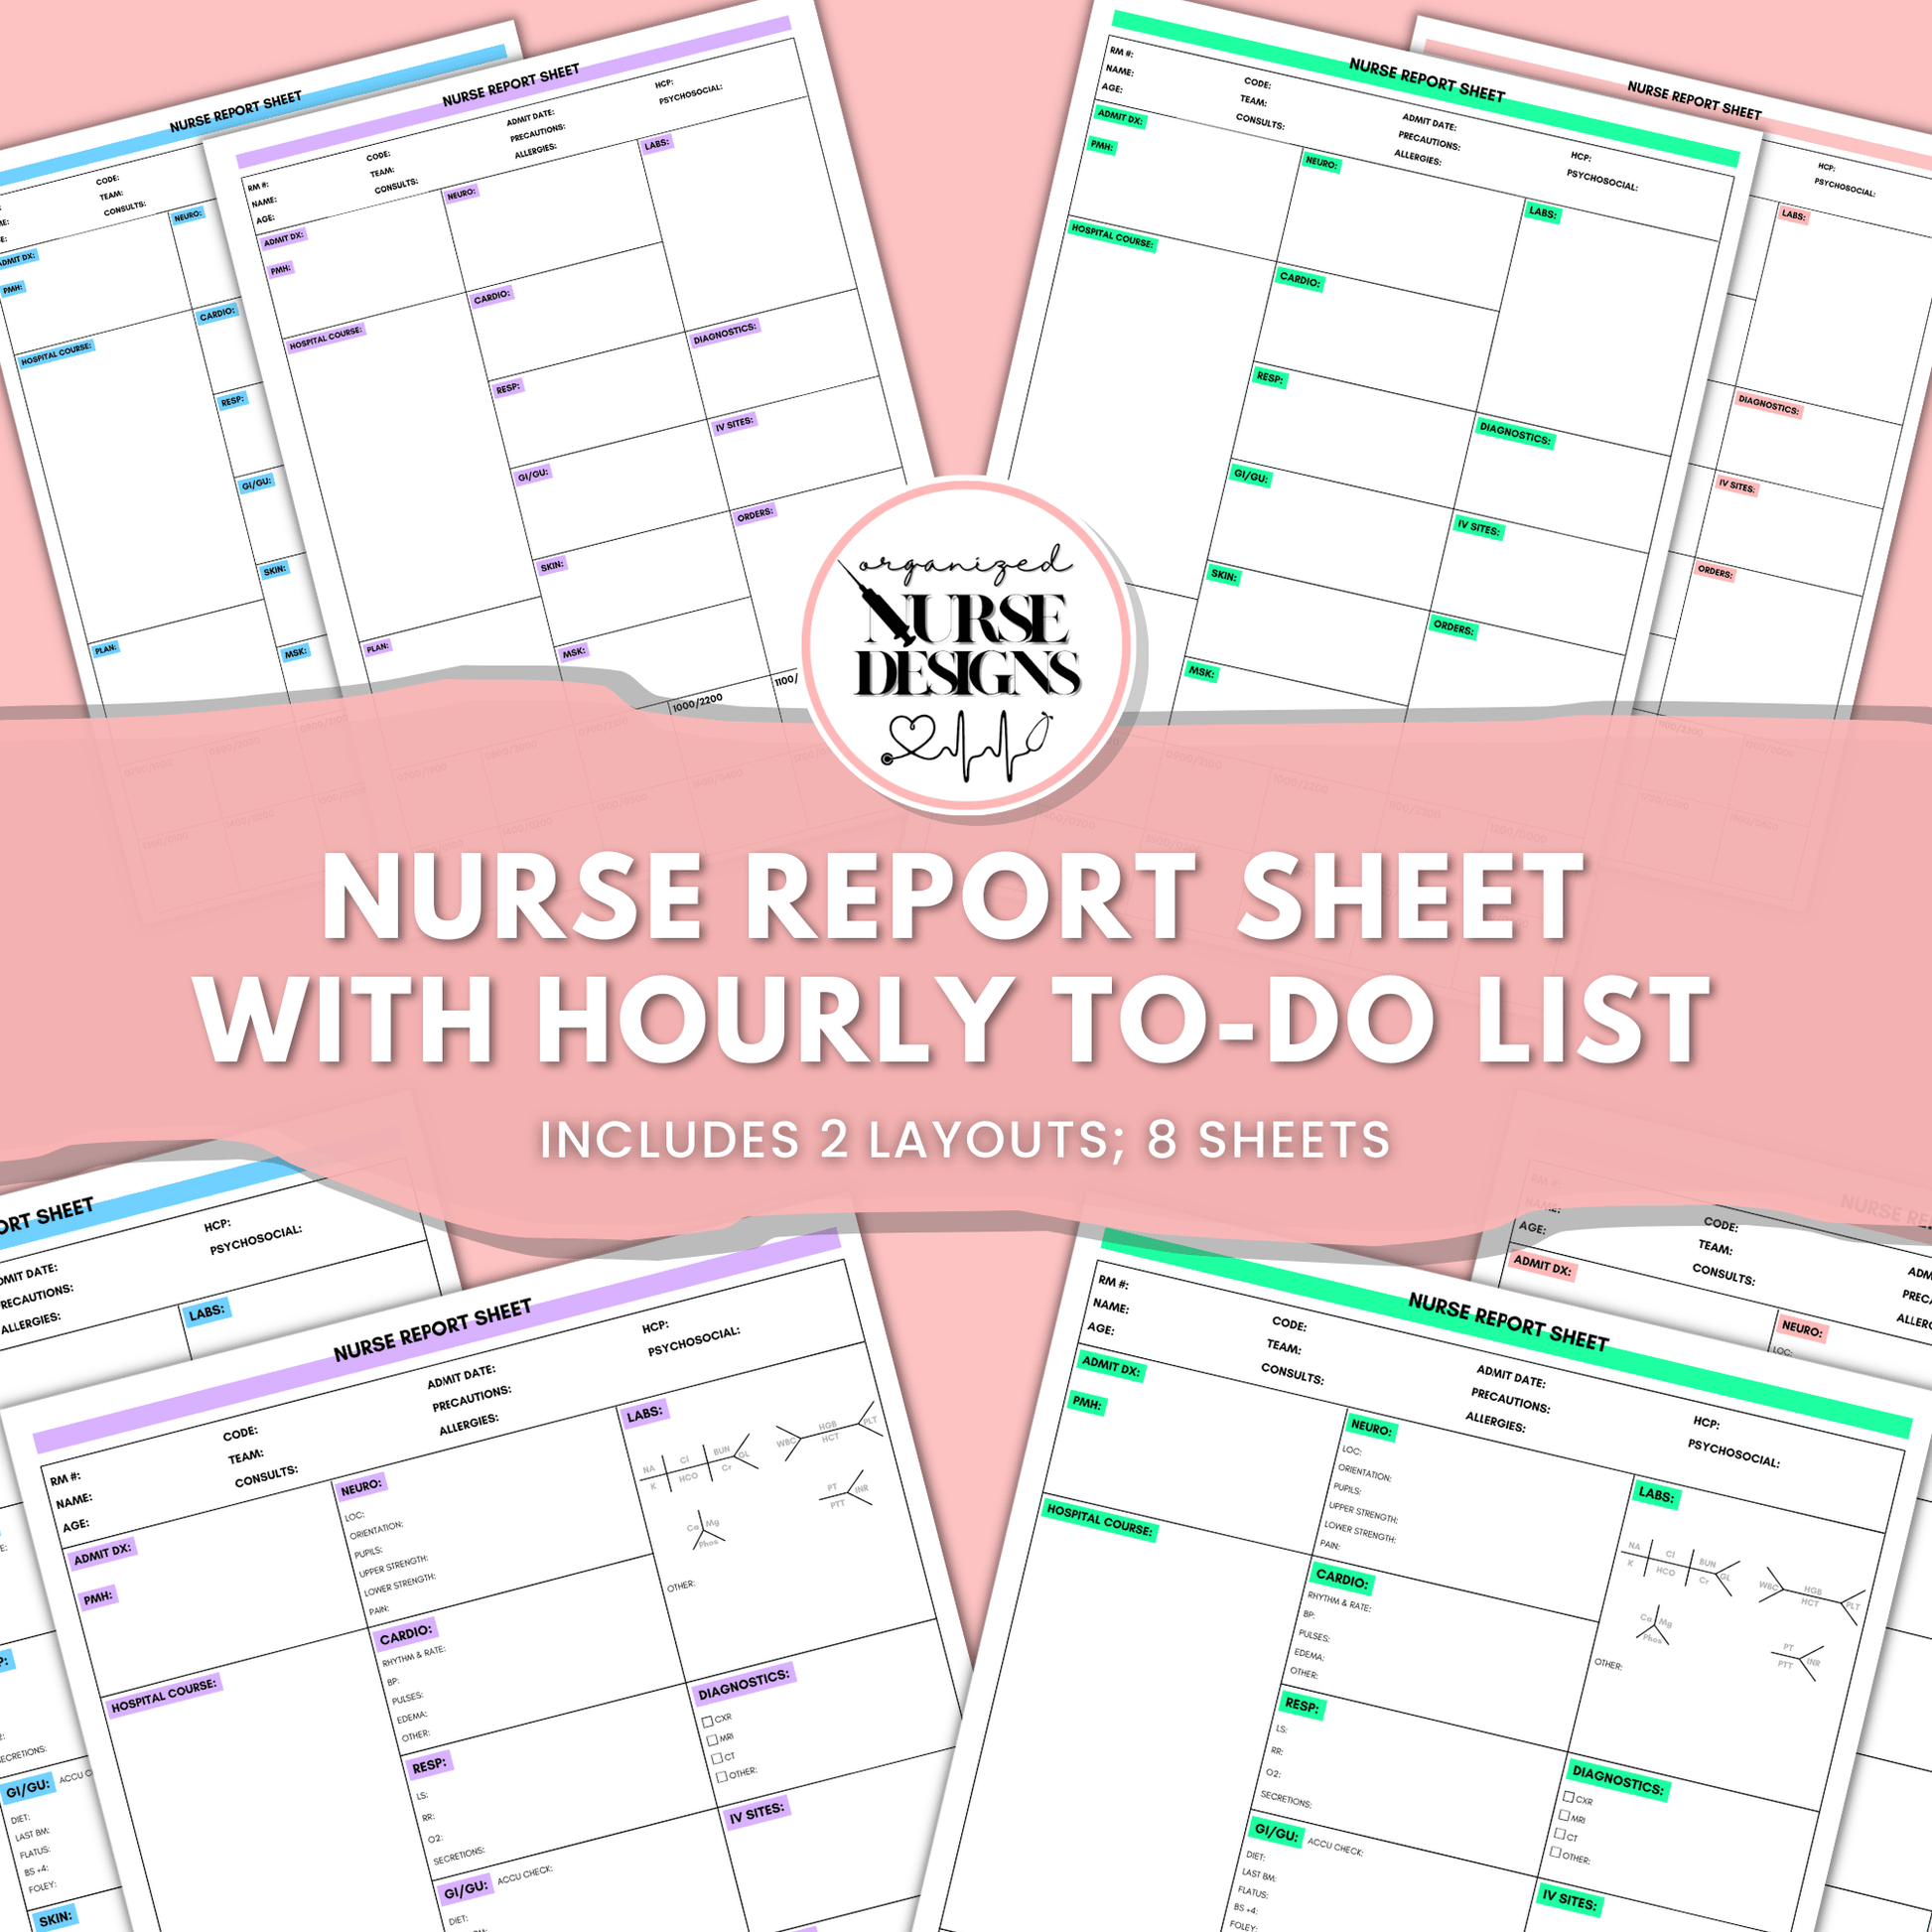 med surg nurse report sheet, ICU nurse report sheet, clinical nurse report sheet, hourly to-do list